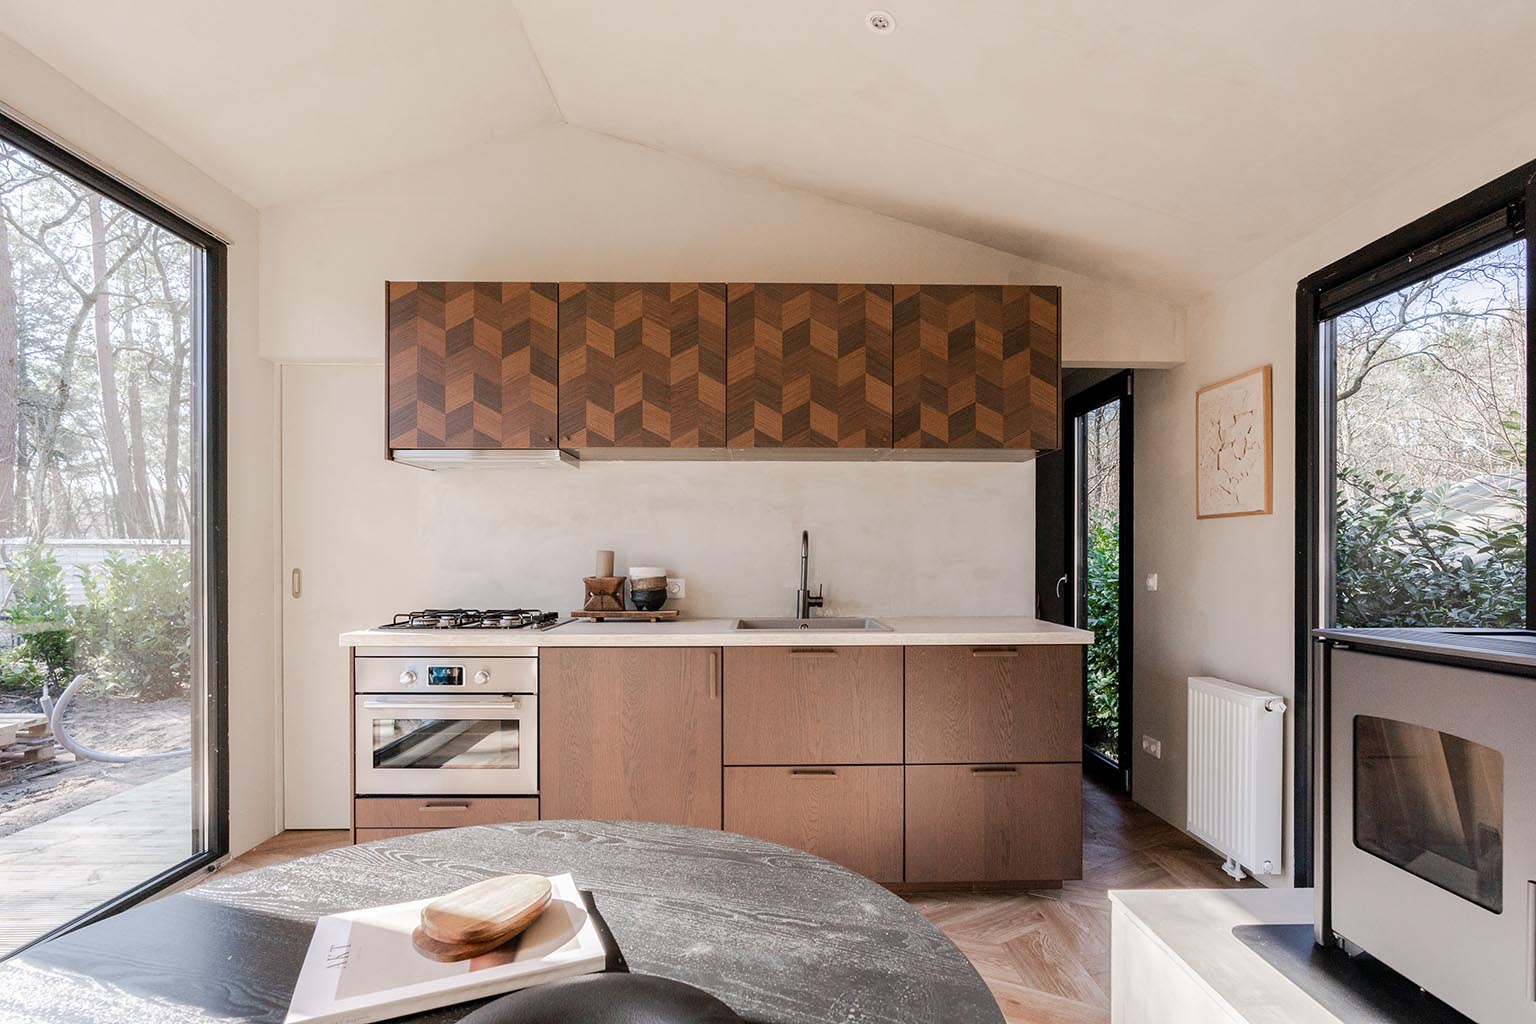 Keuken in klein huisje plaatsen | Stek Magazine